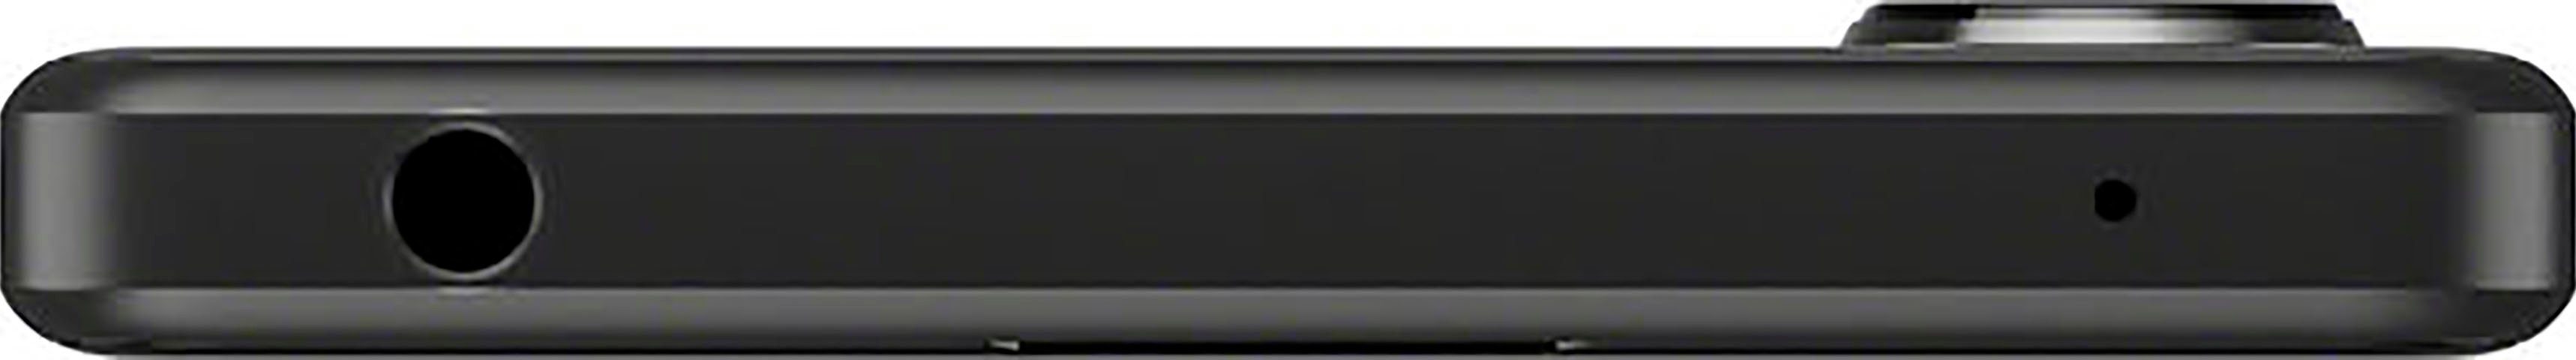 5 Xperia Speicherplatz, 128 (15,49 Kamera) cm/6,1 IV GB Smartphone schwarz Zoll, 12 MP Sony